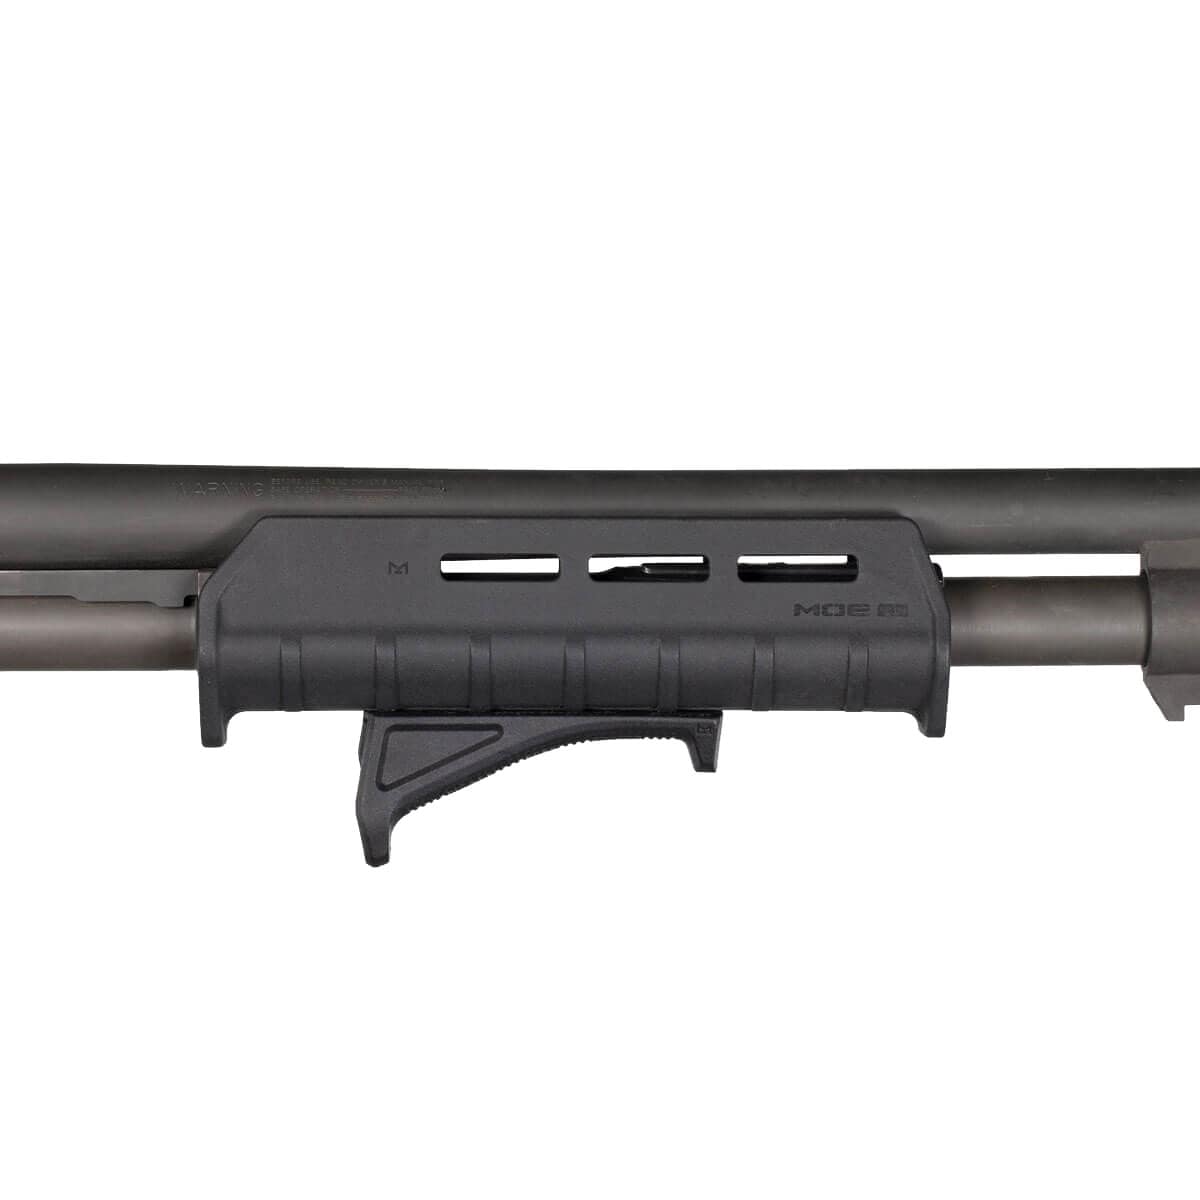 Цівка Magpul MOE M-LOK Forend для рушниць Mossberg 590/590A1 - Flat Dark Earth